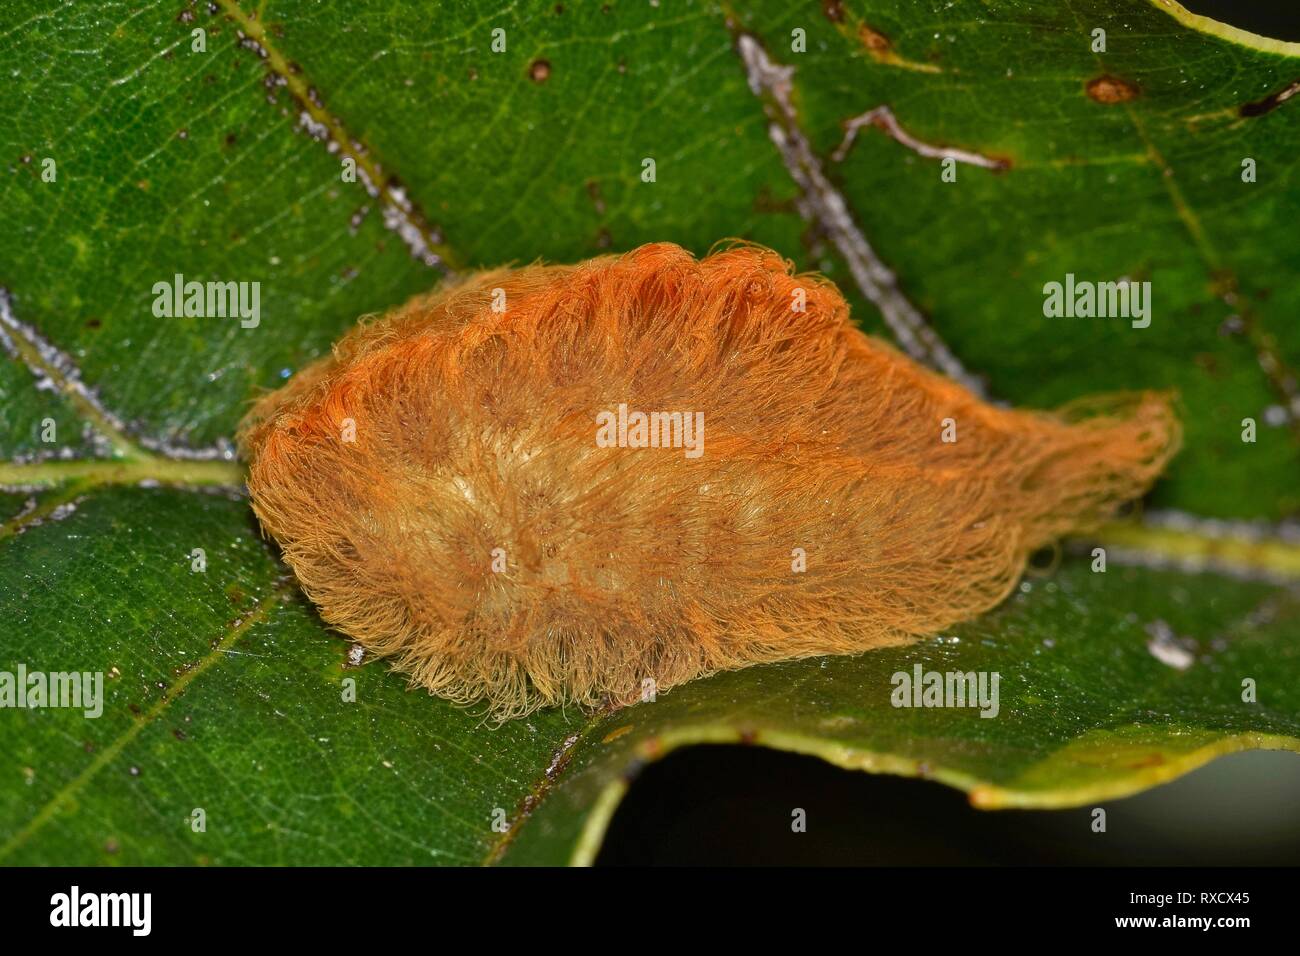 Una pelliccia di flanella Moth caterpillar su una foglia. Questi bruchi hanno spine nascosta sotto i loro capelli e provoca grande dolore e fastidio quando colpito Foto Stock